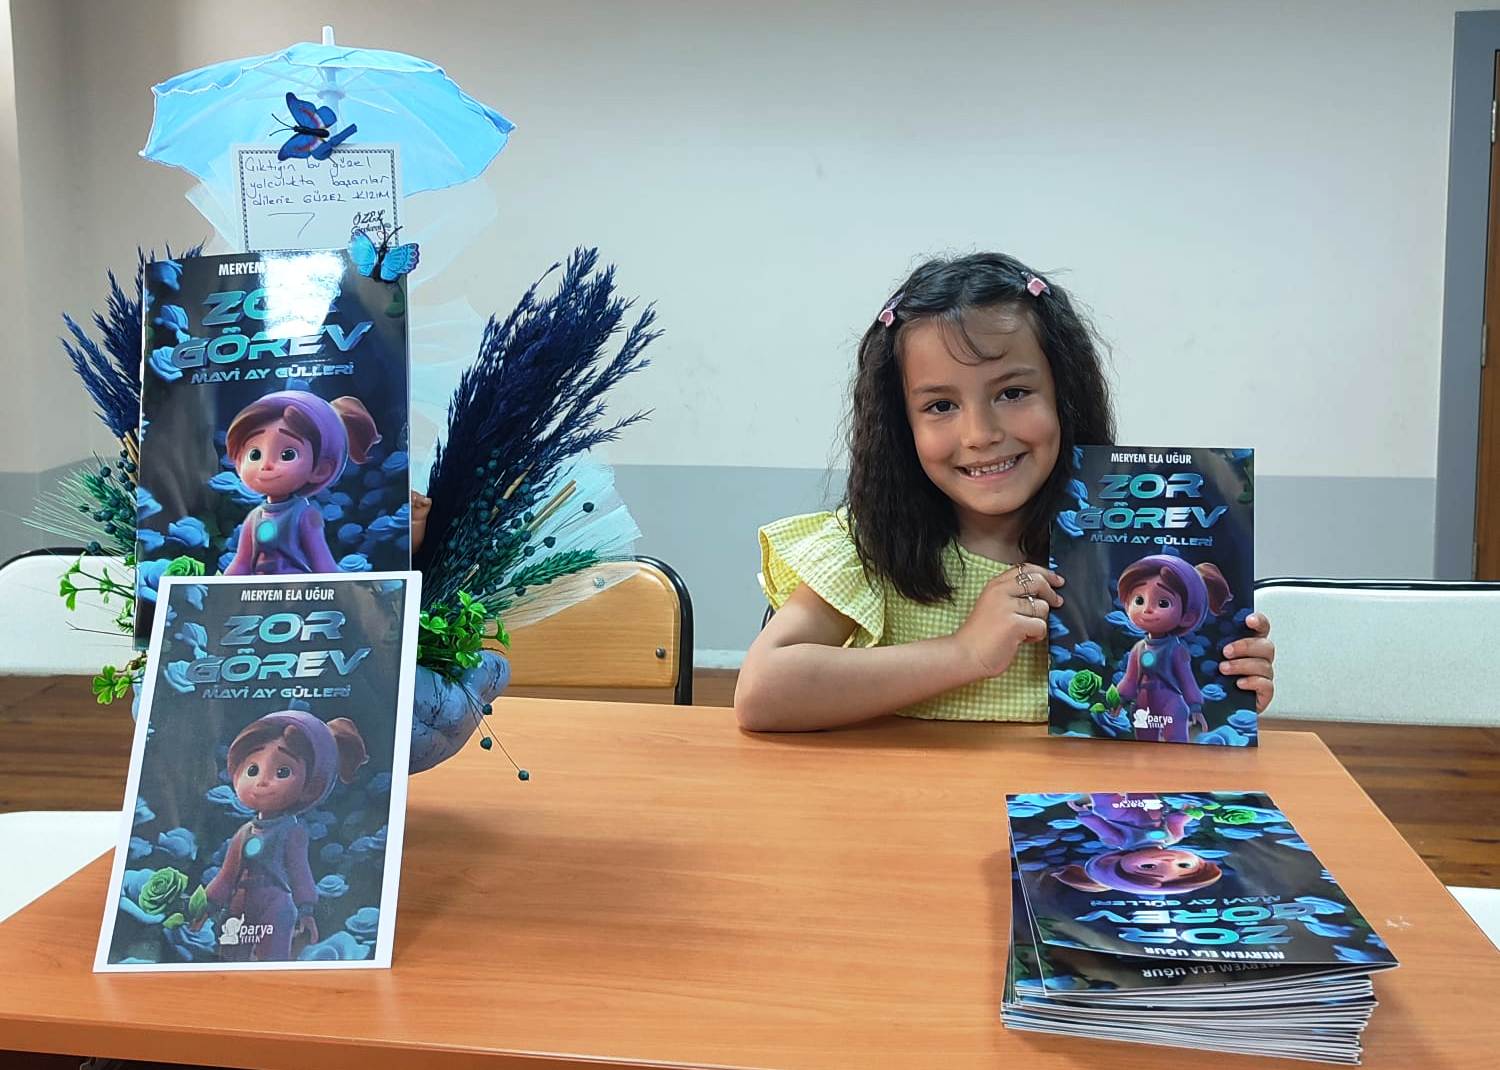 Seydişehir'de küçük yazar Meryem Ela Uğur " Zor Görev Mavi ay gülleri " kitabını çıkardı